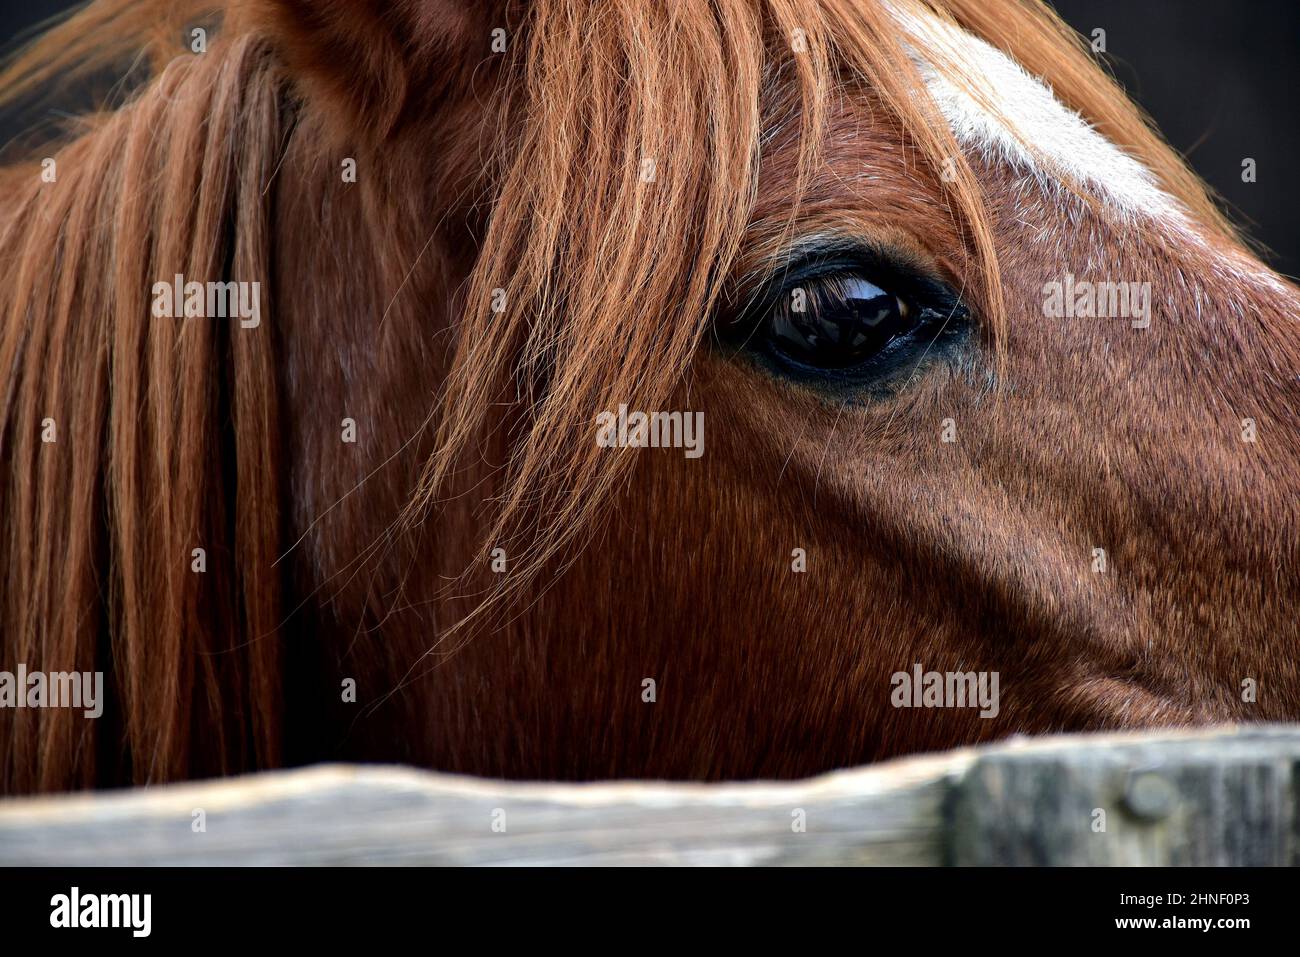 Nahaufnahme von Chestnut Horse's Head mit Stern auf der Stirn, Auge, Stirn und Mähne Stockfoto